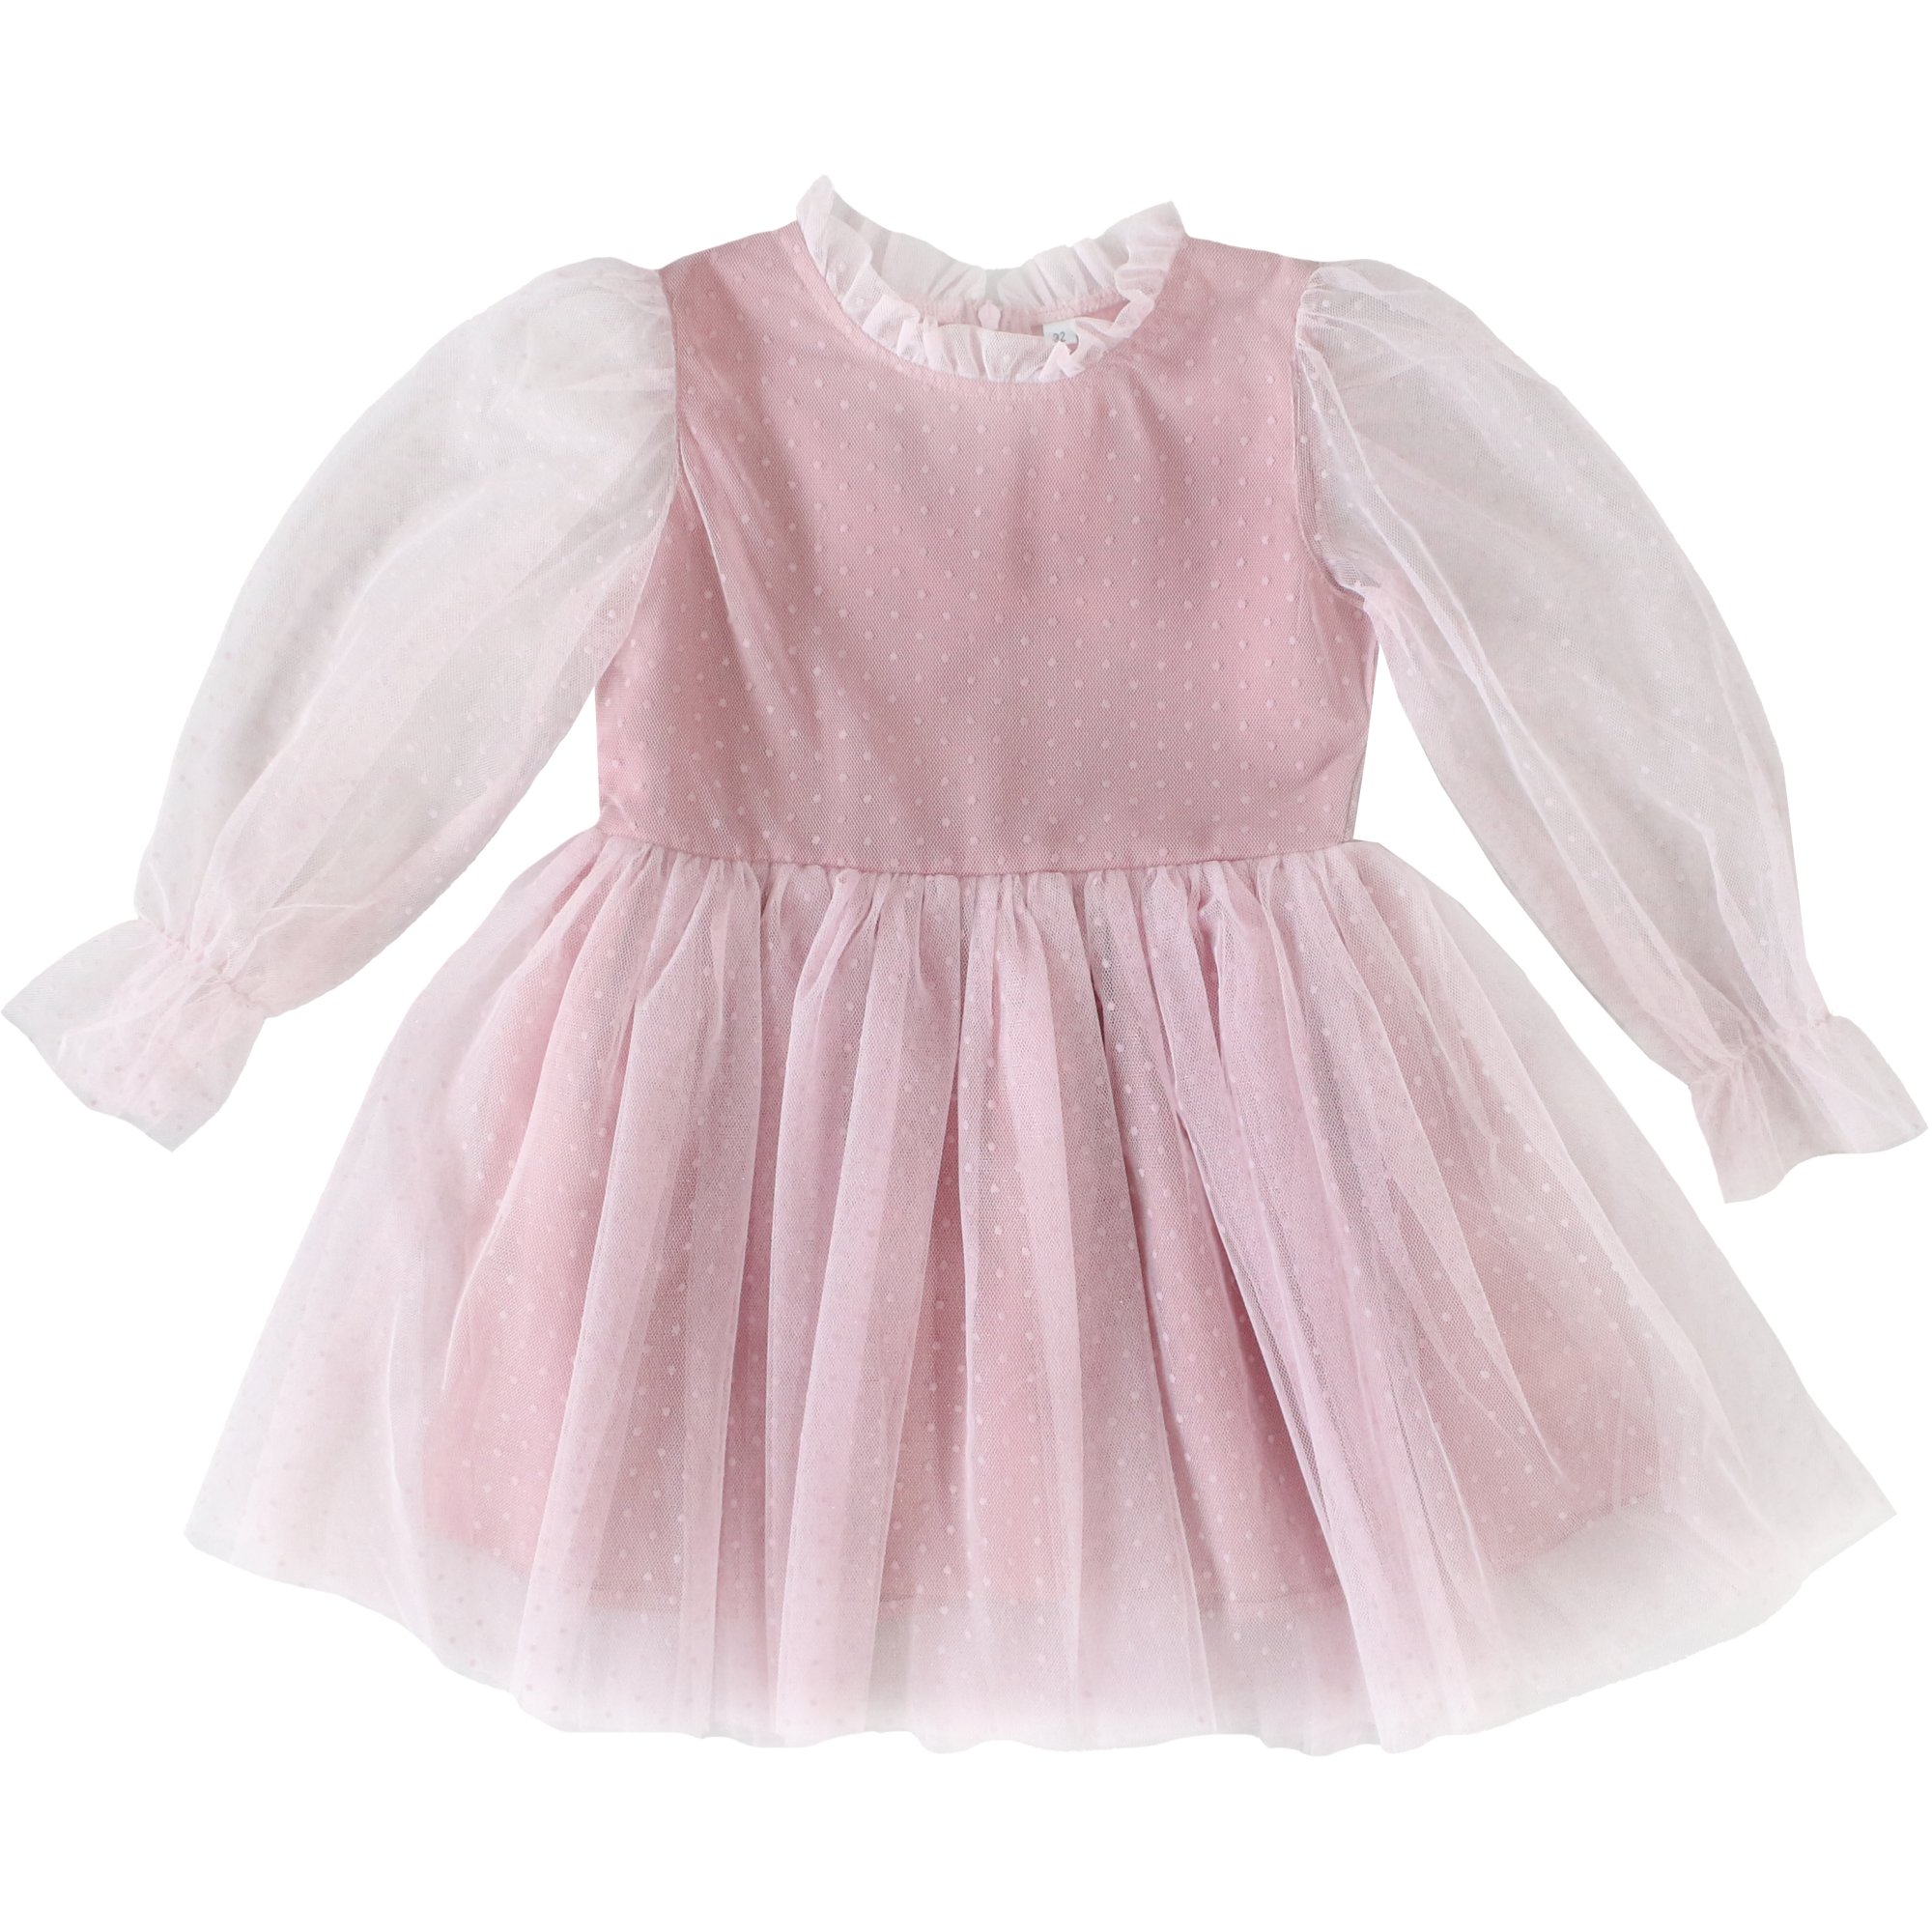 Платье д/р 110 Горох сетка розовый 5301